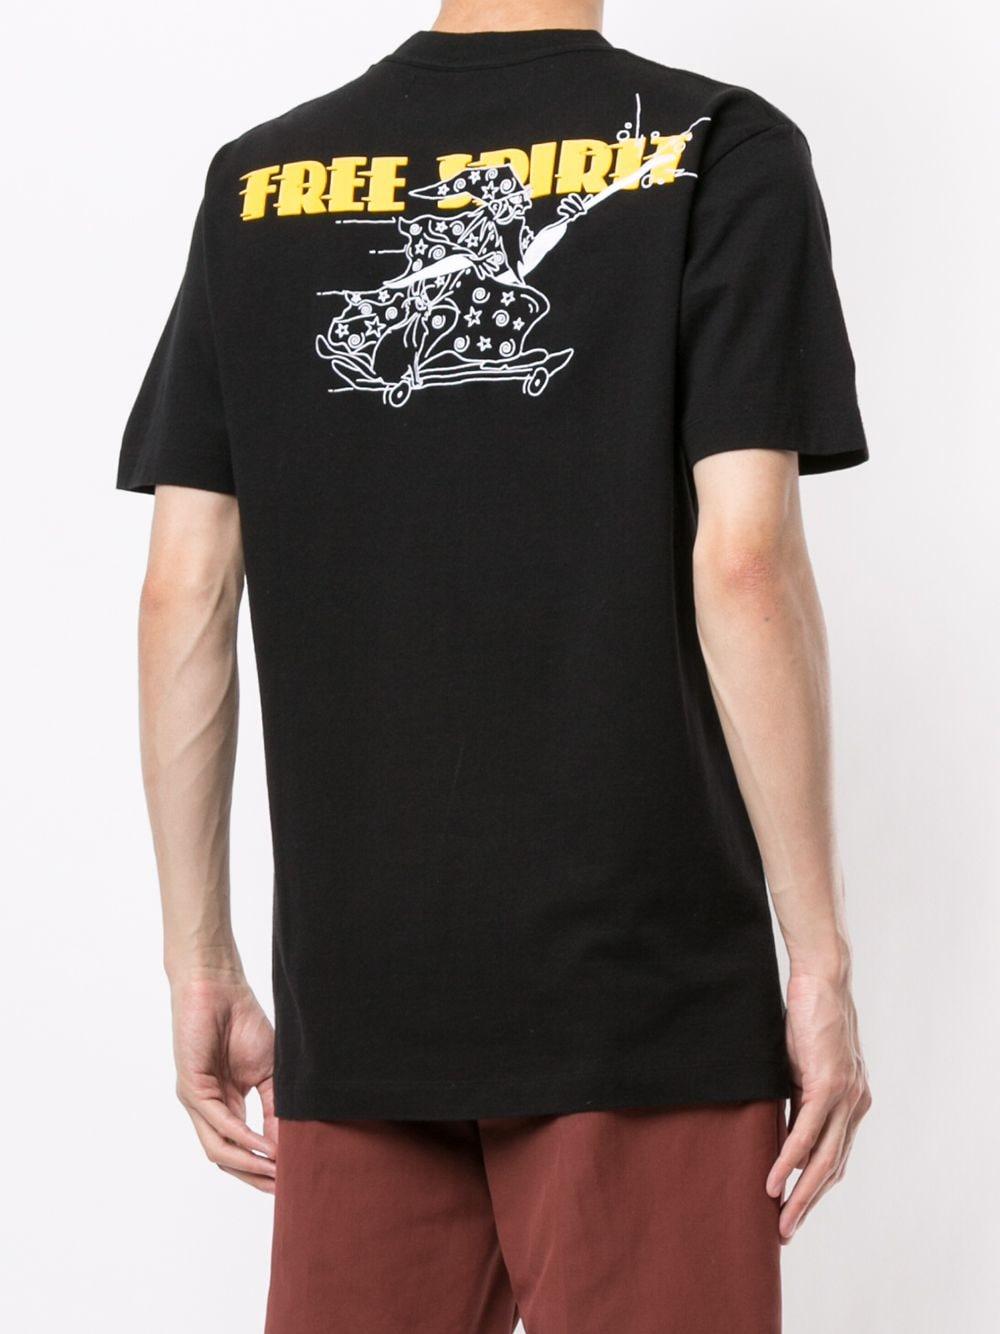 free spirit t shirt